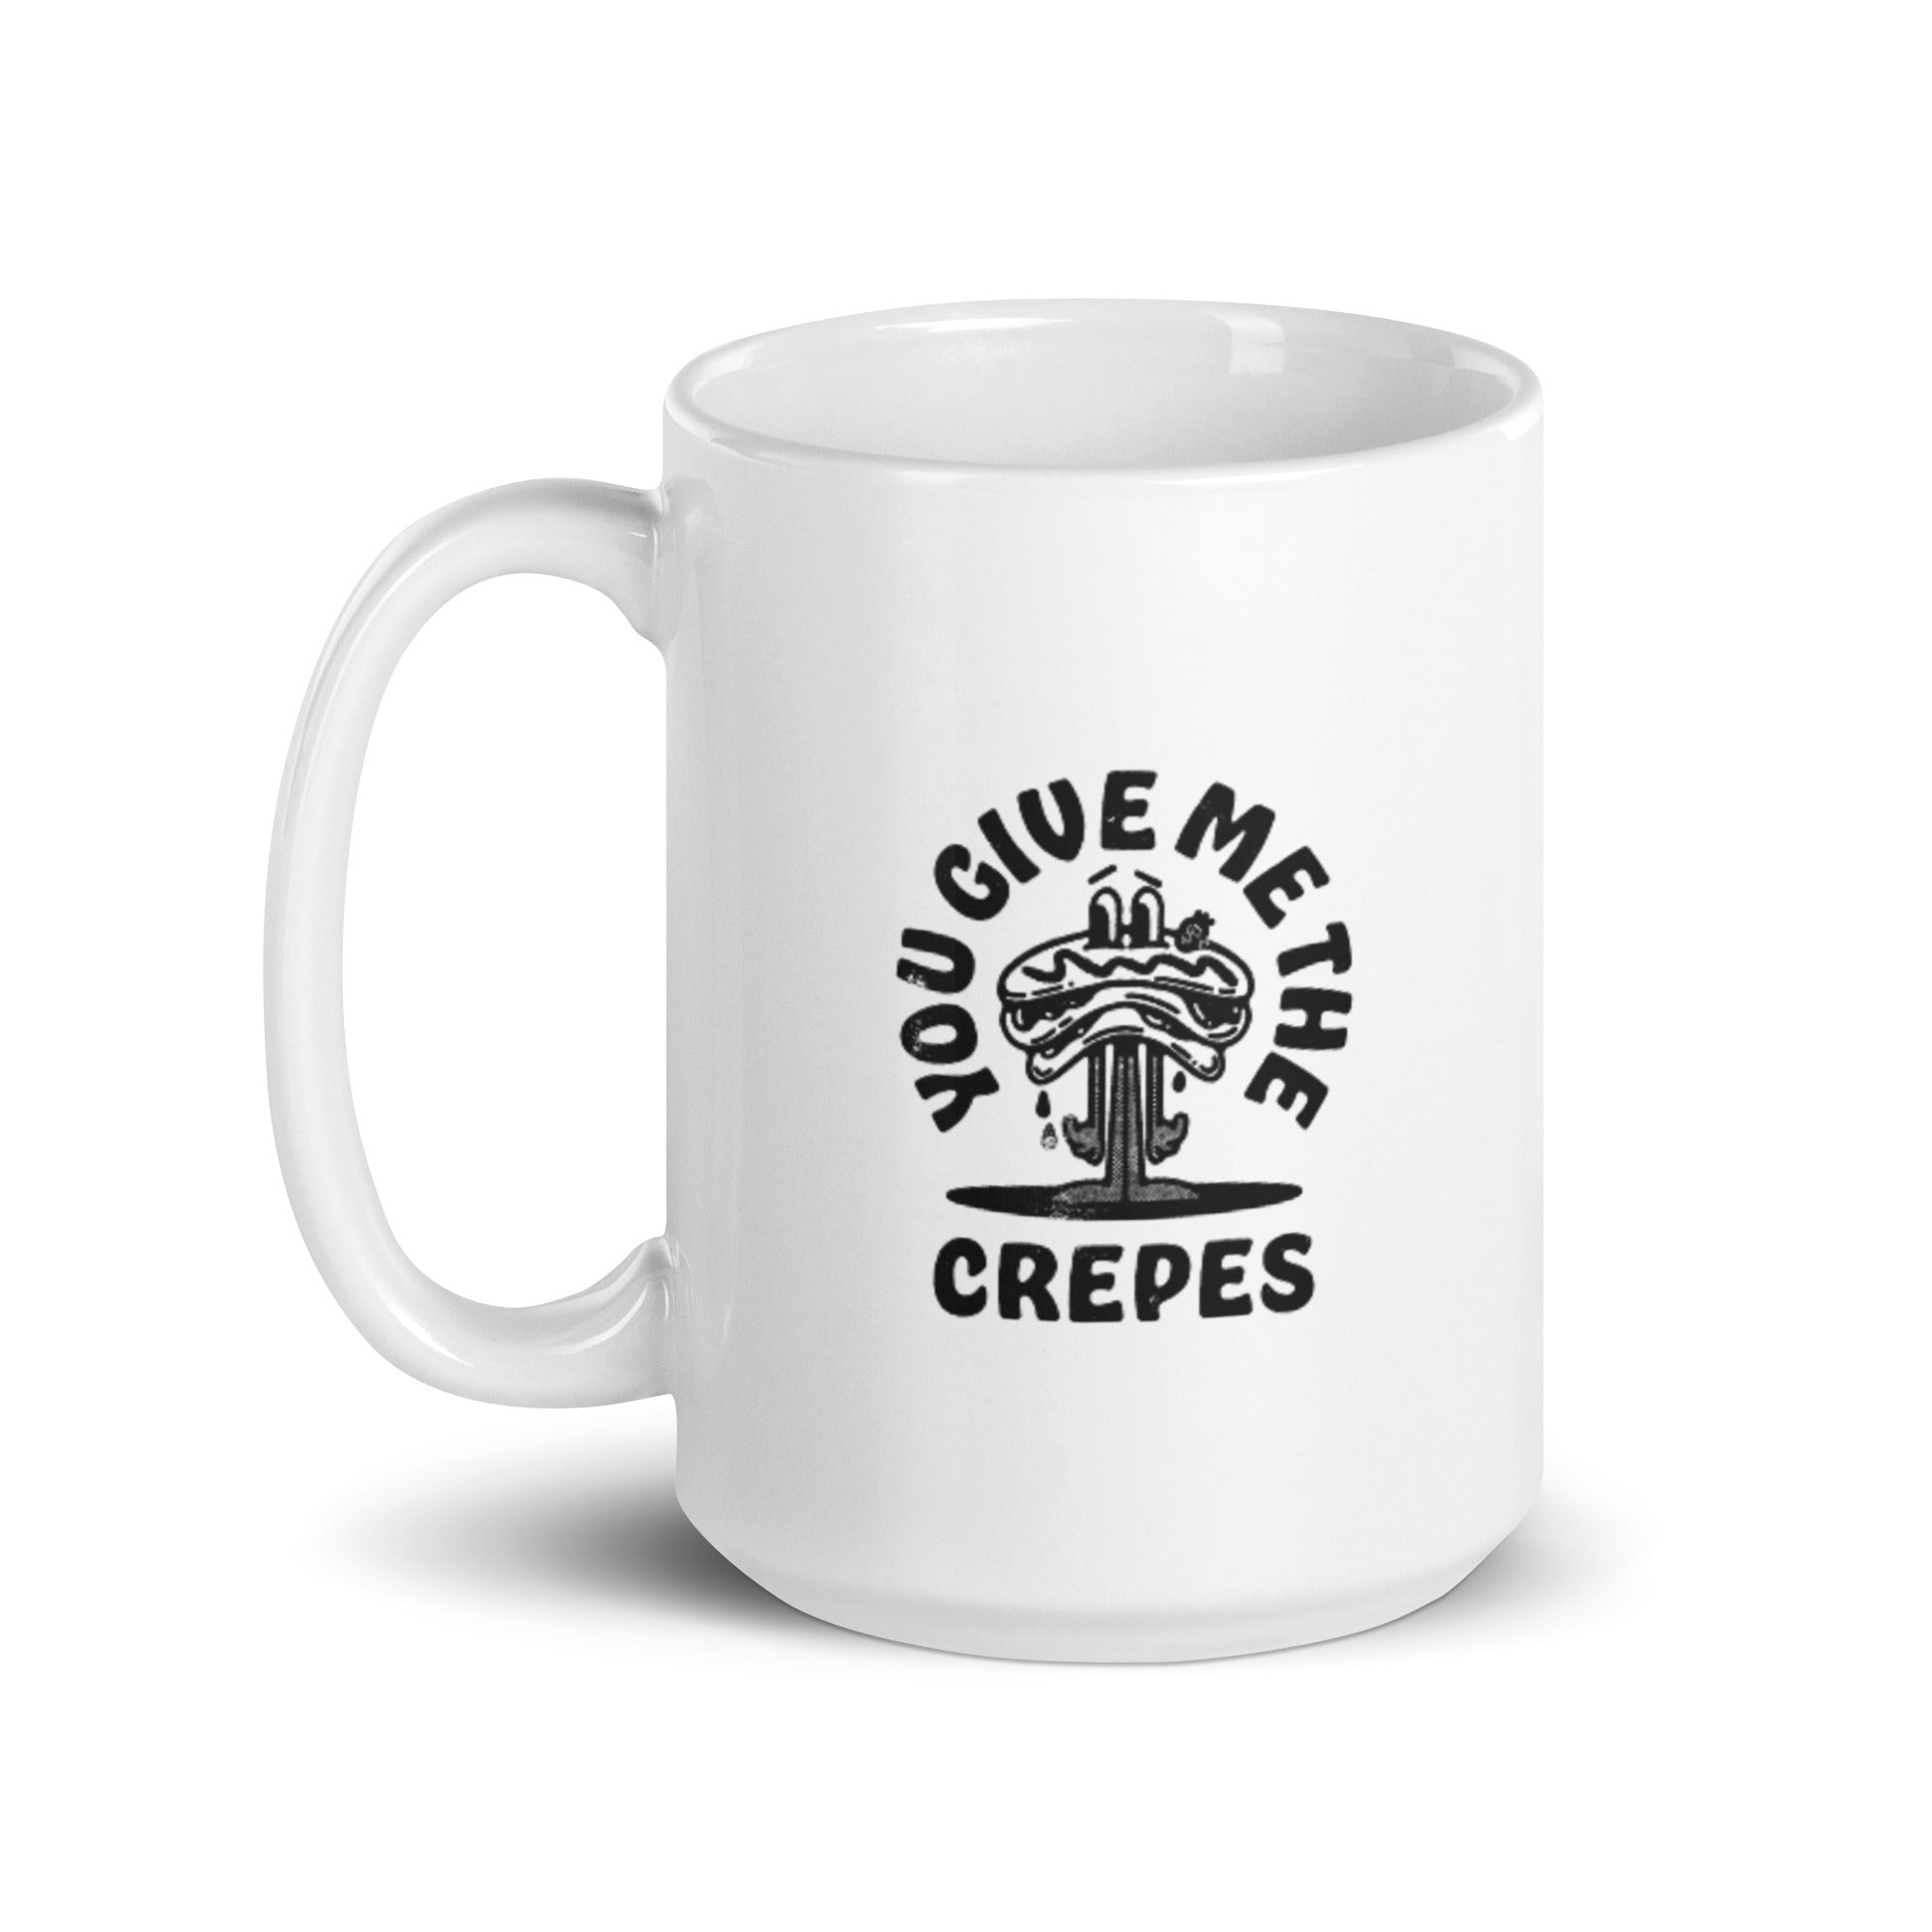 You Give Me The Crepes - White glossy mug